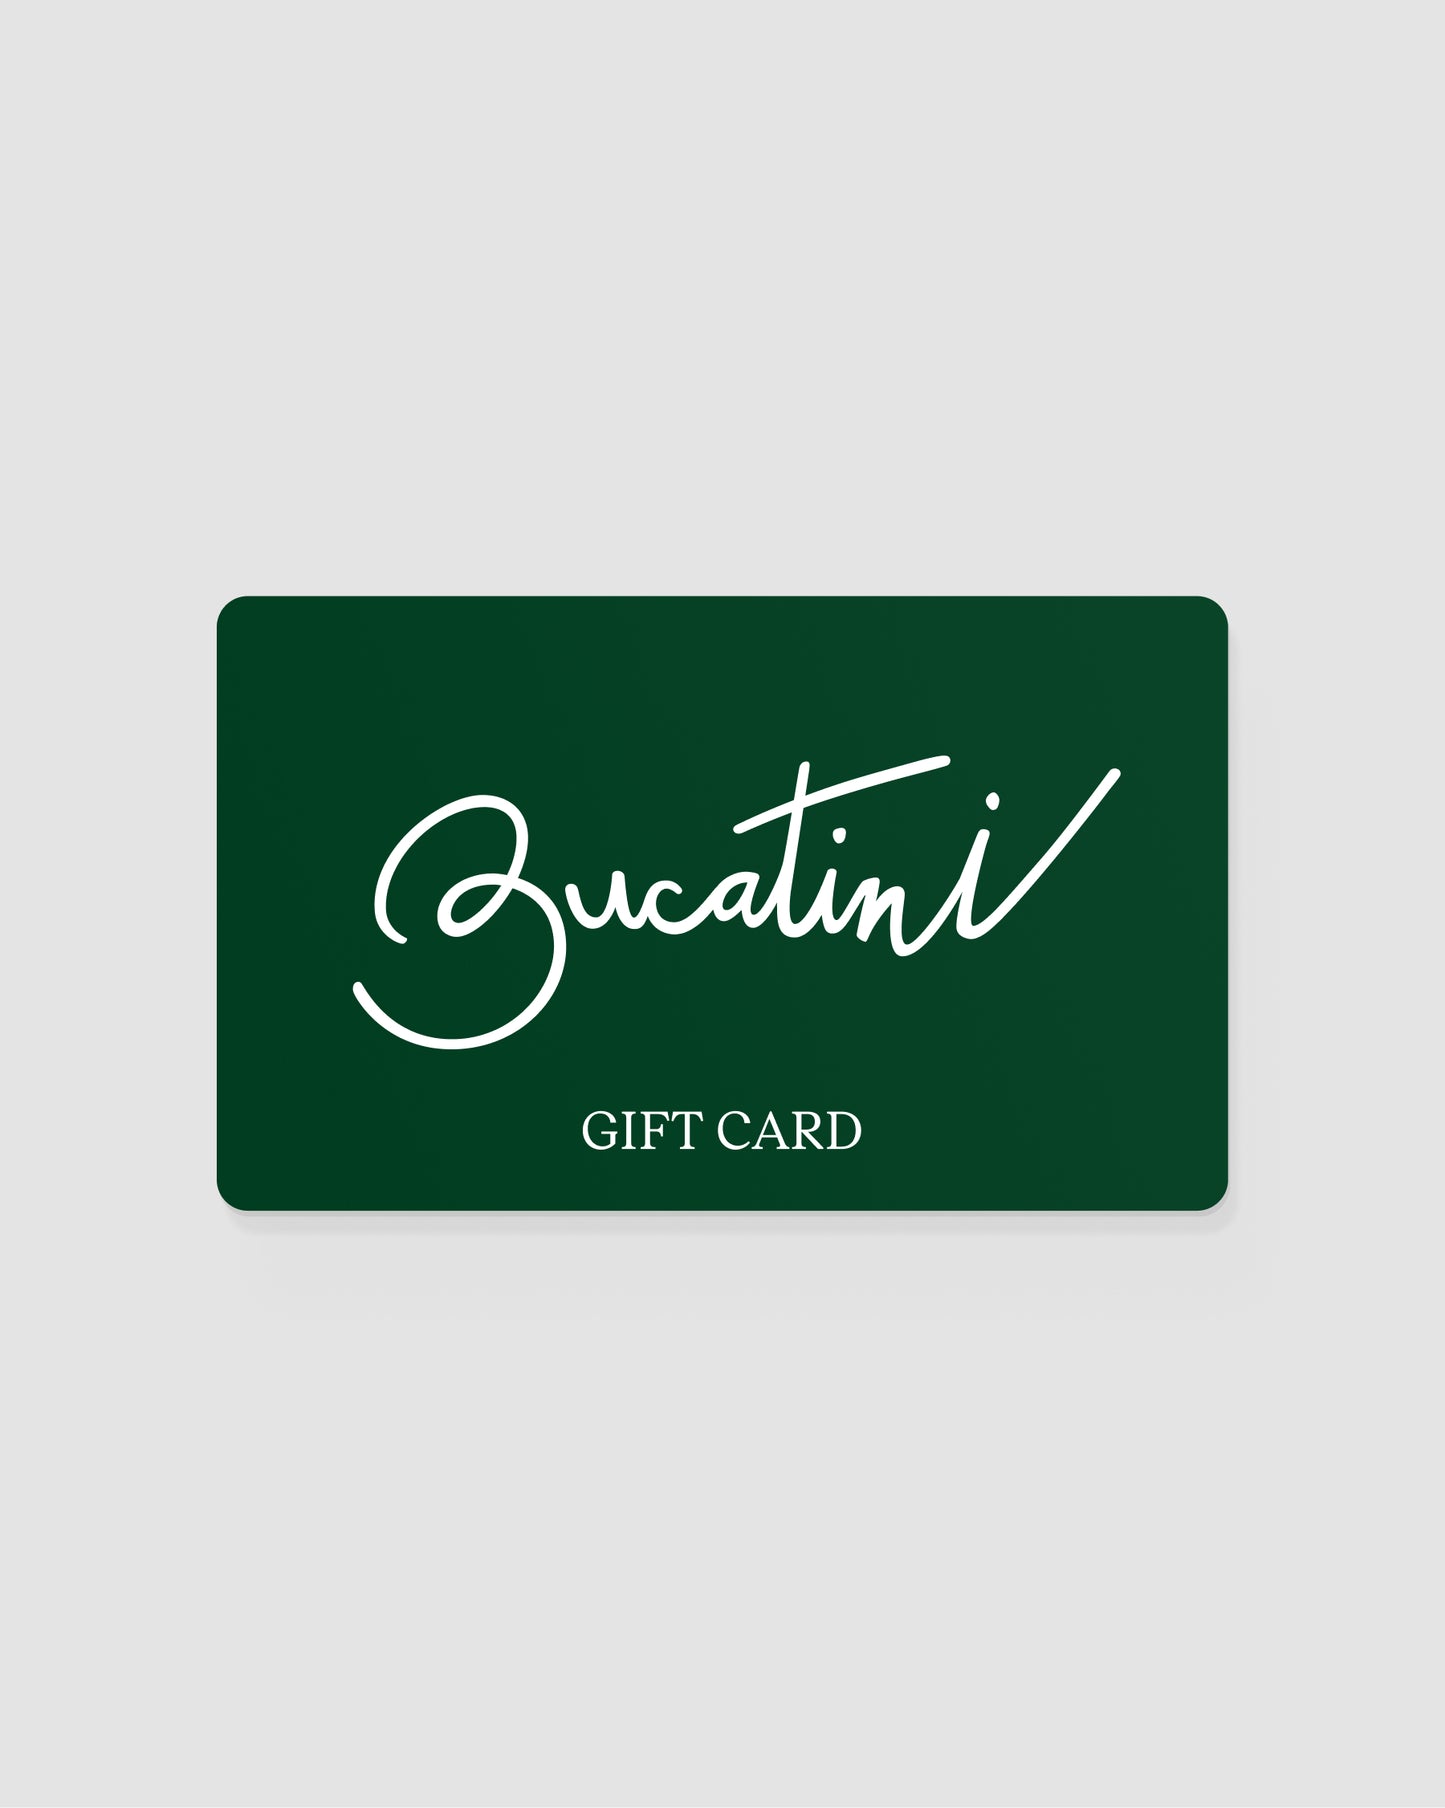 Bucatini Gift Card